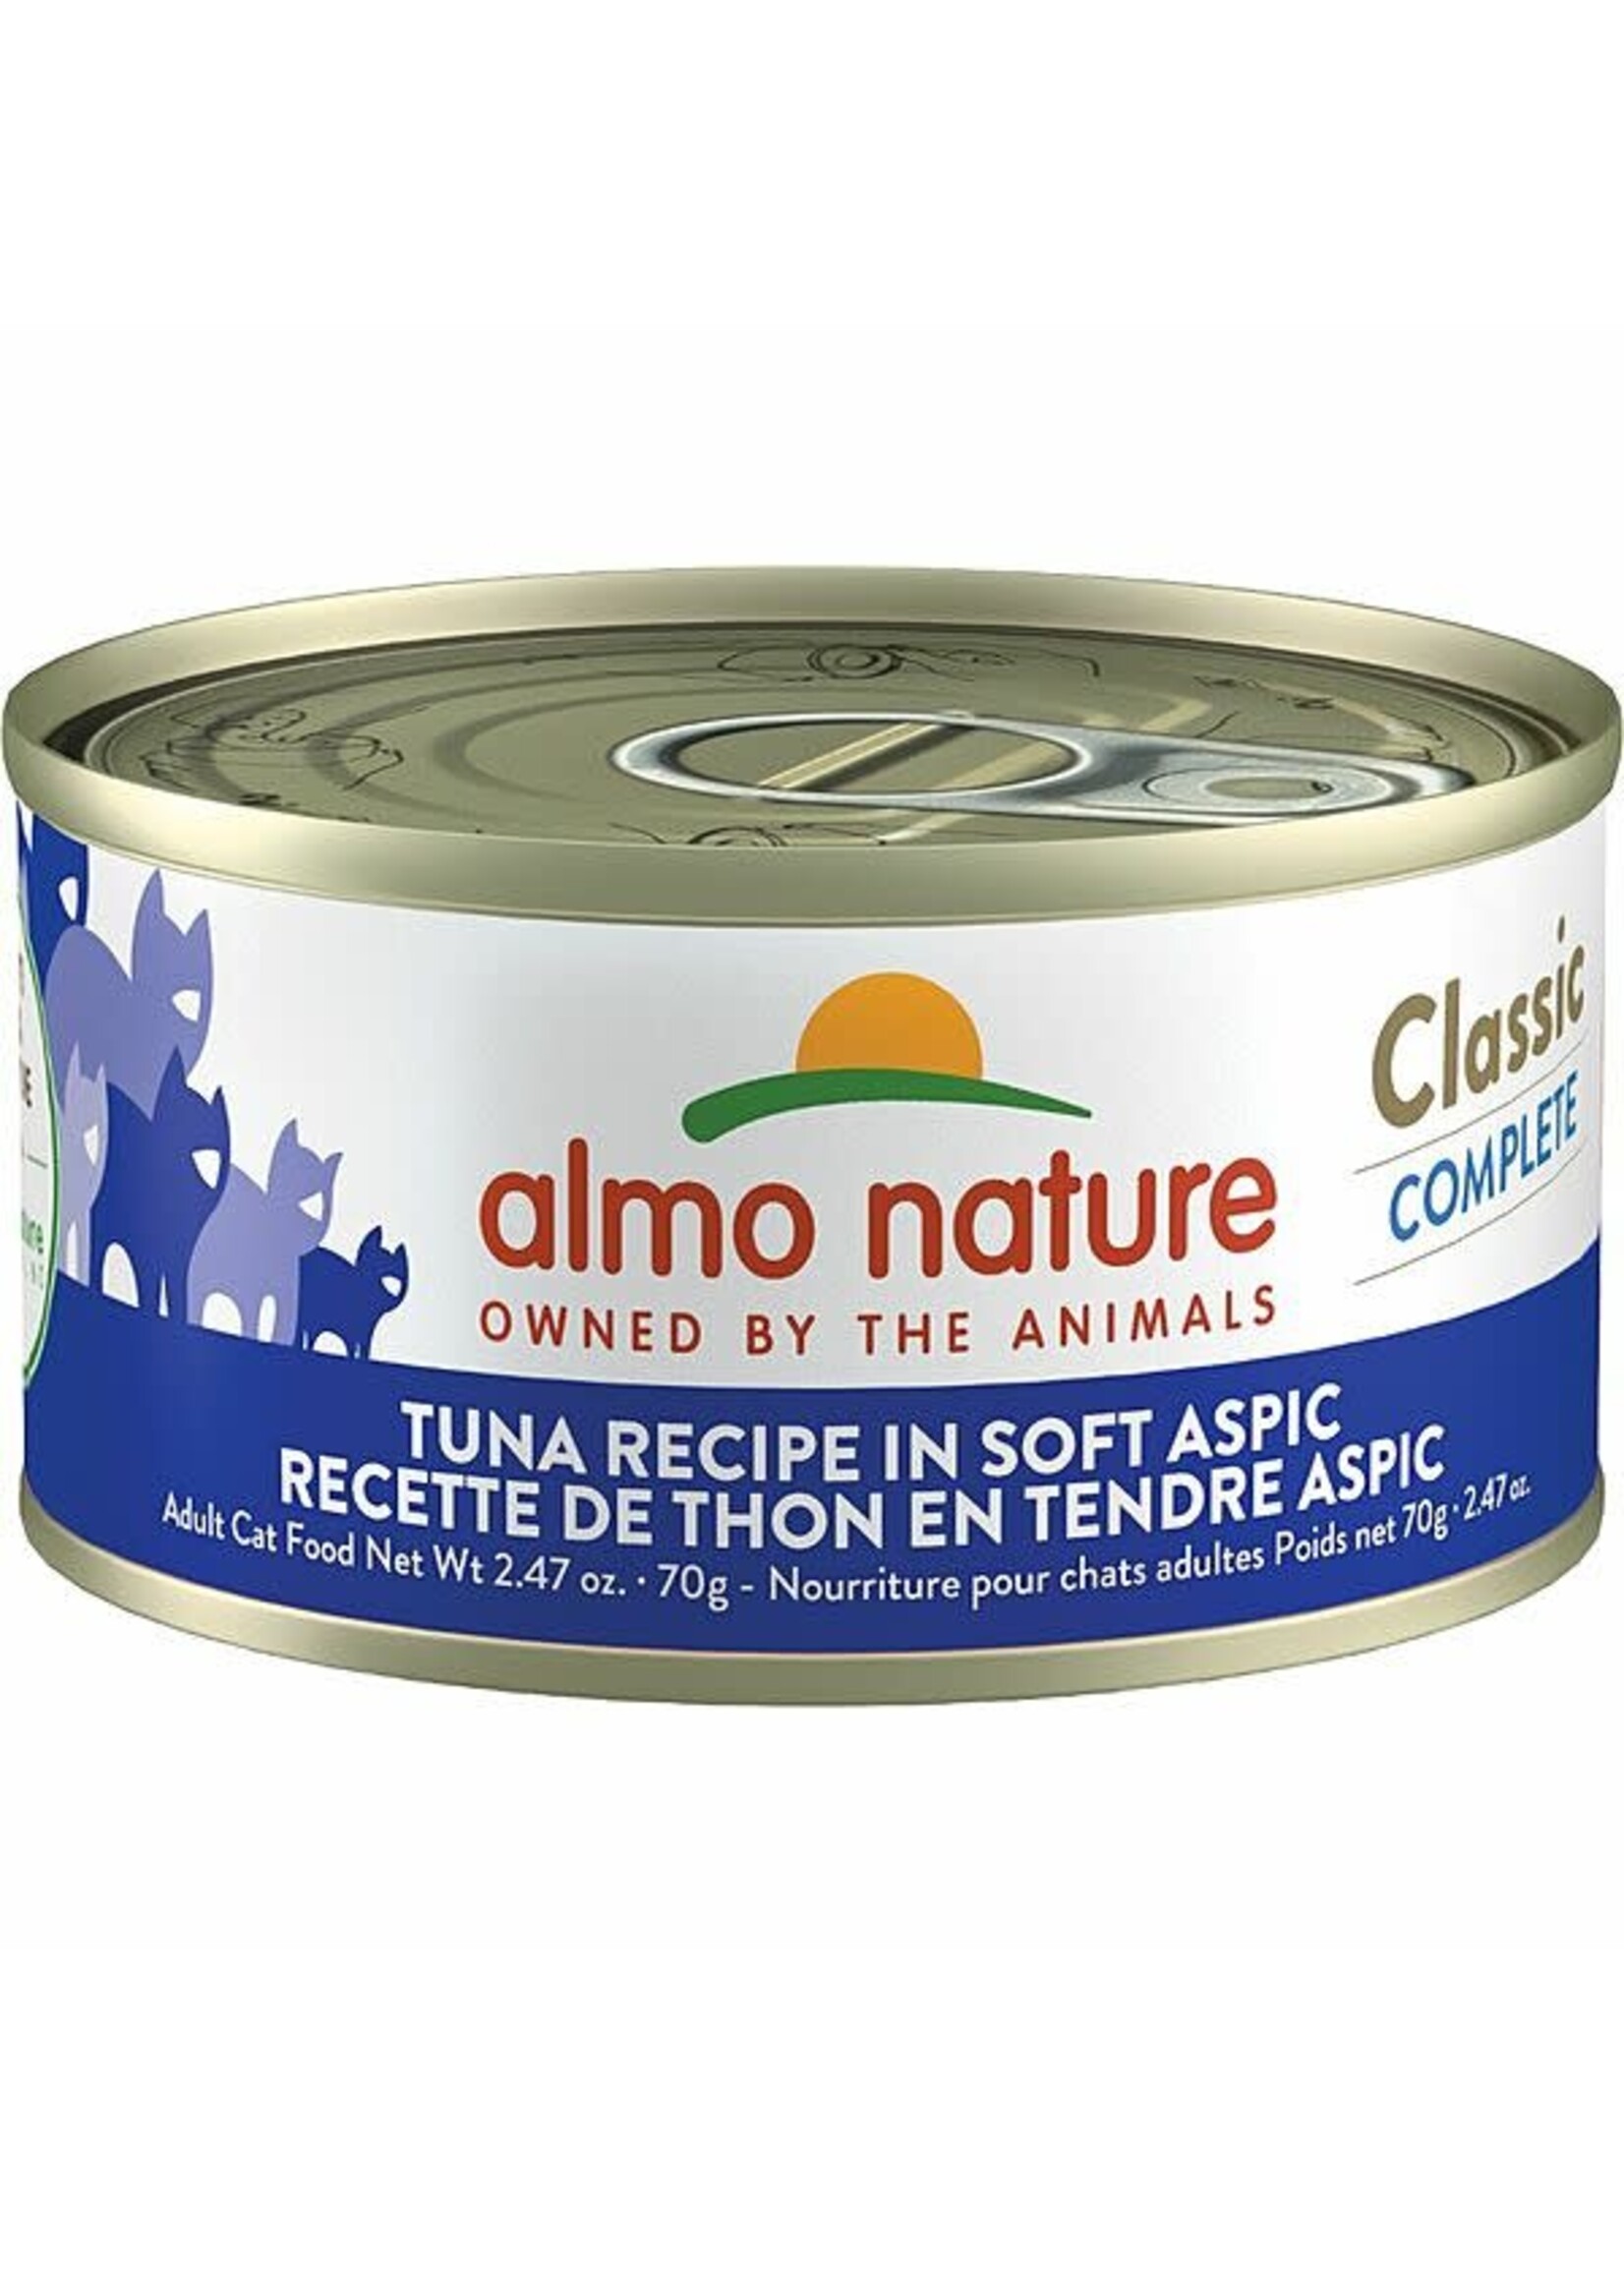 almo Nature almo nature Classic Complete Tuna Recipe in Soft Aspic 70gm  single